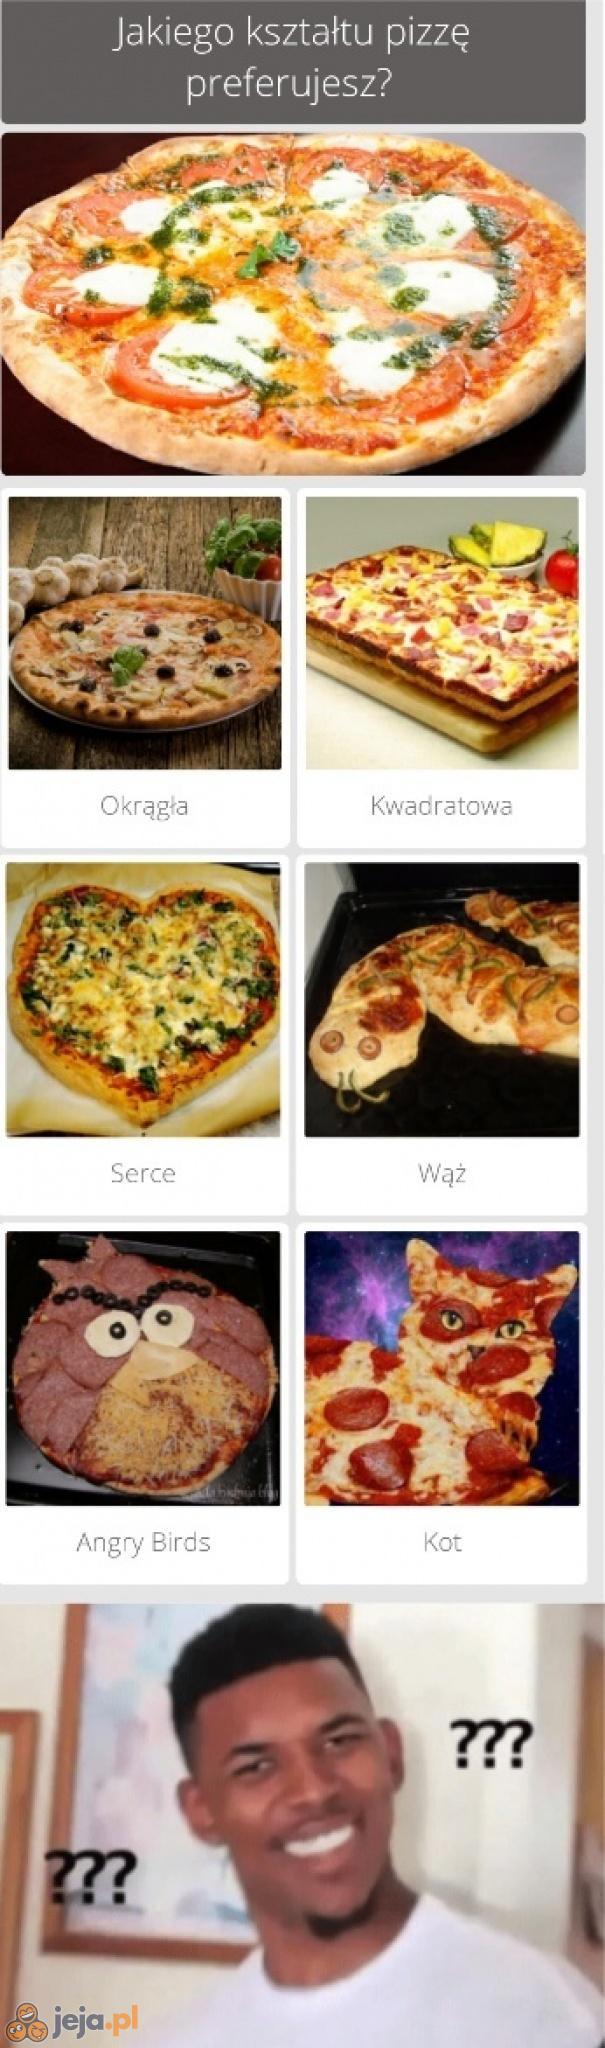 Jaki kształt pizzy preferujesz?